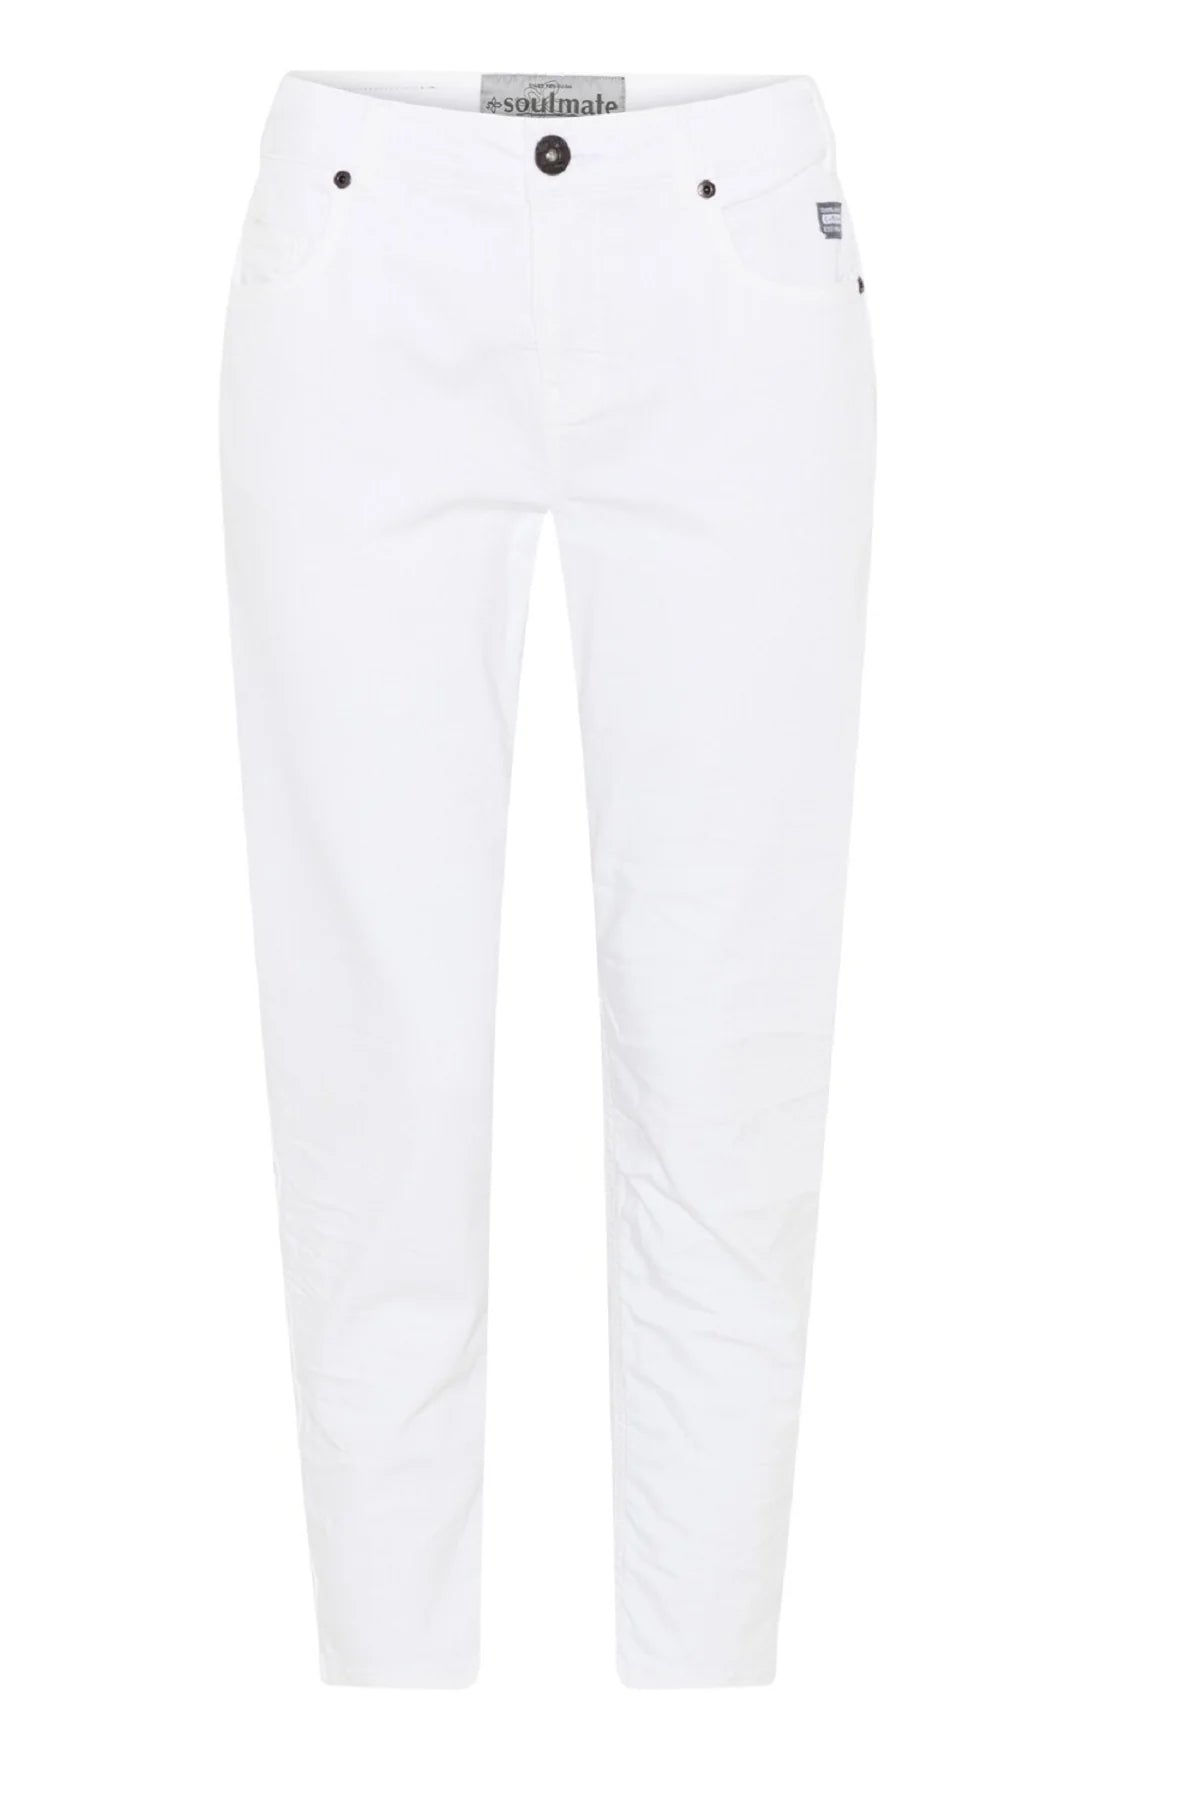 Soulmate jeans i hvide med knaplukning 2 skrålommer og baglommer